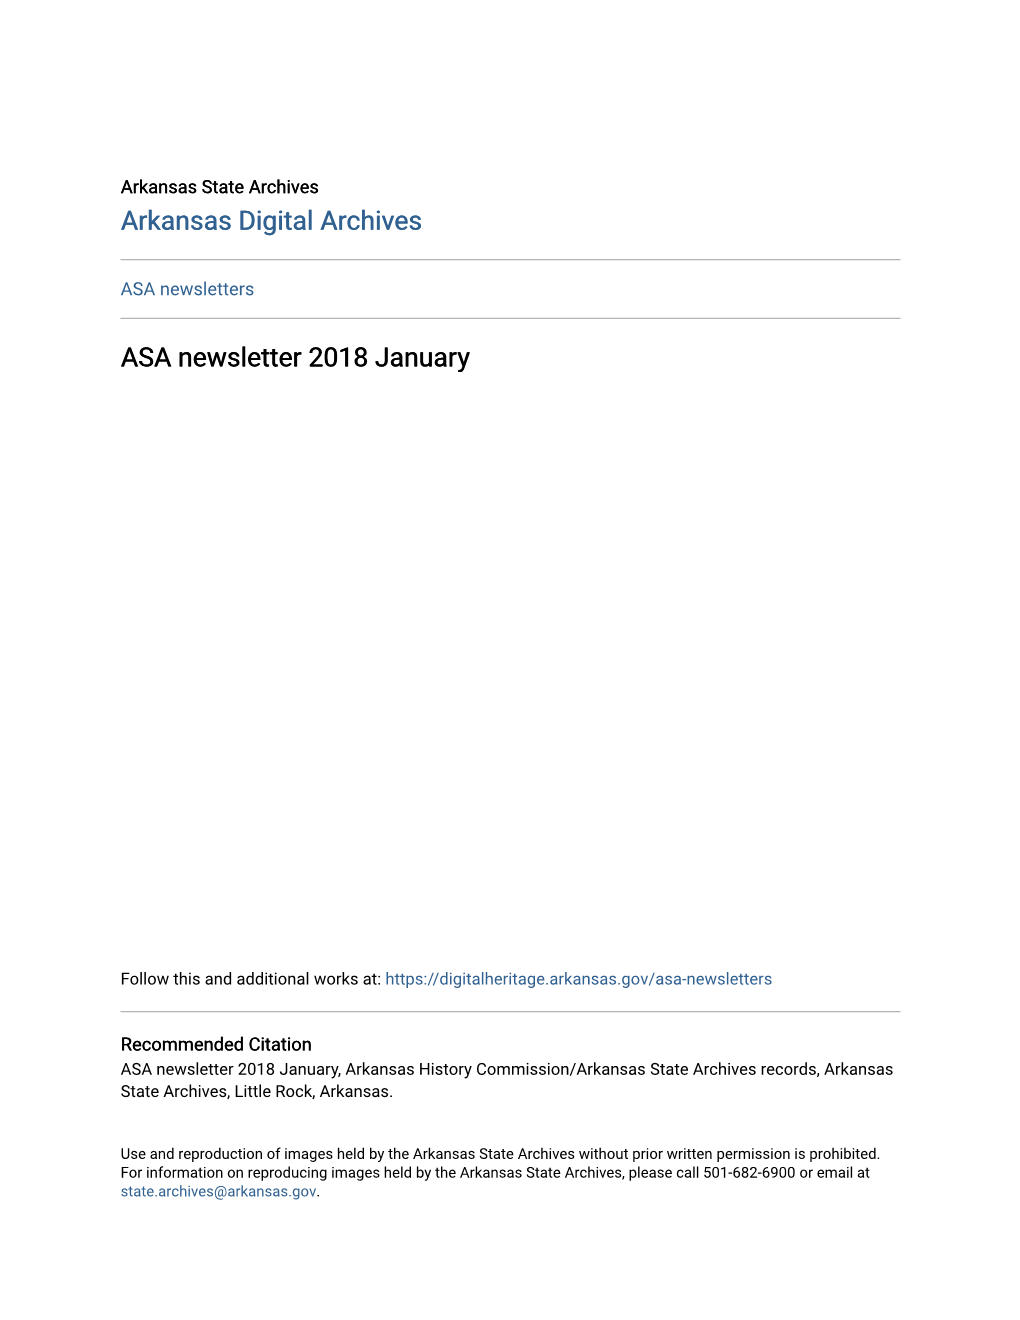 ASA Newsletter 2018 January